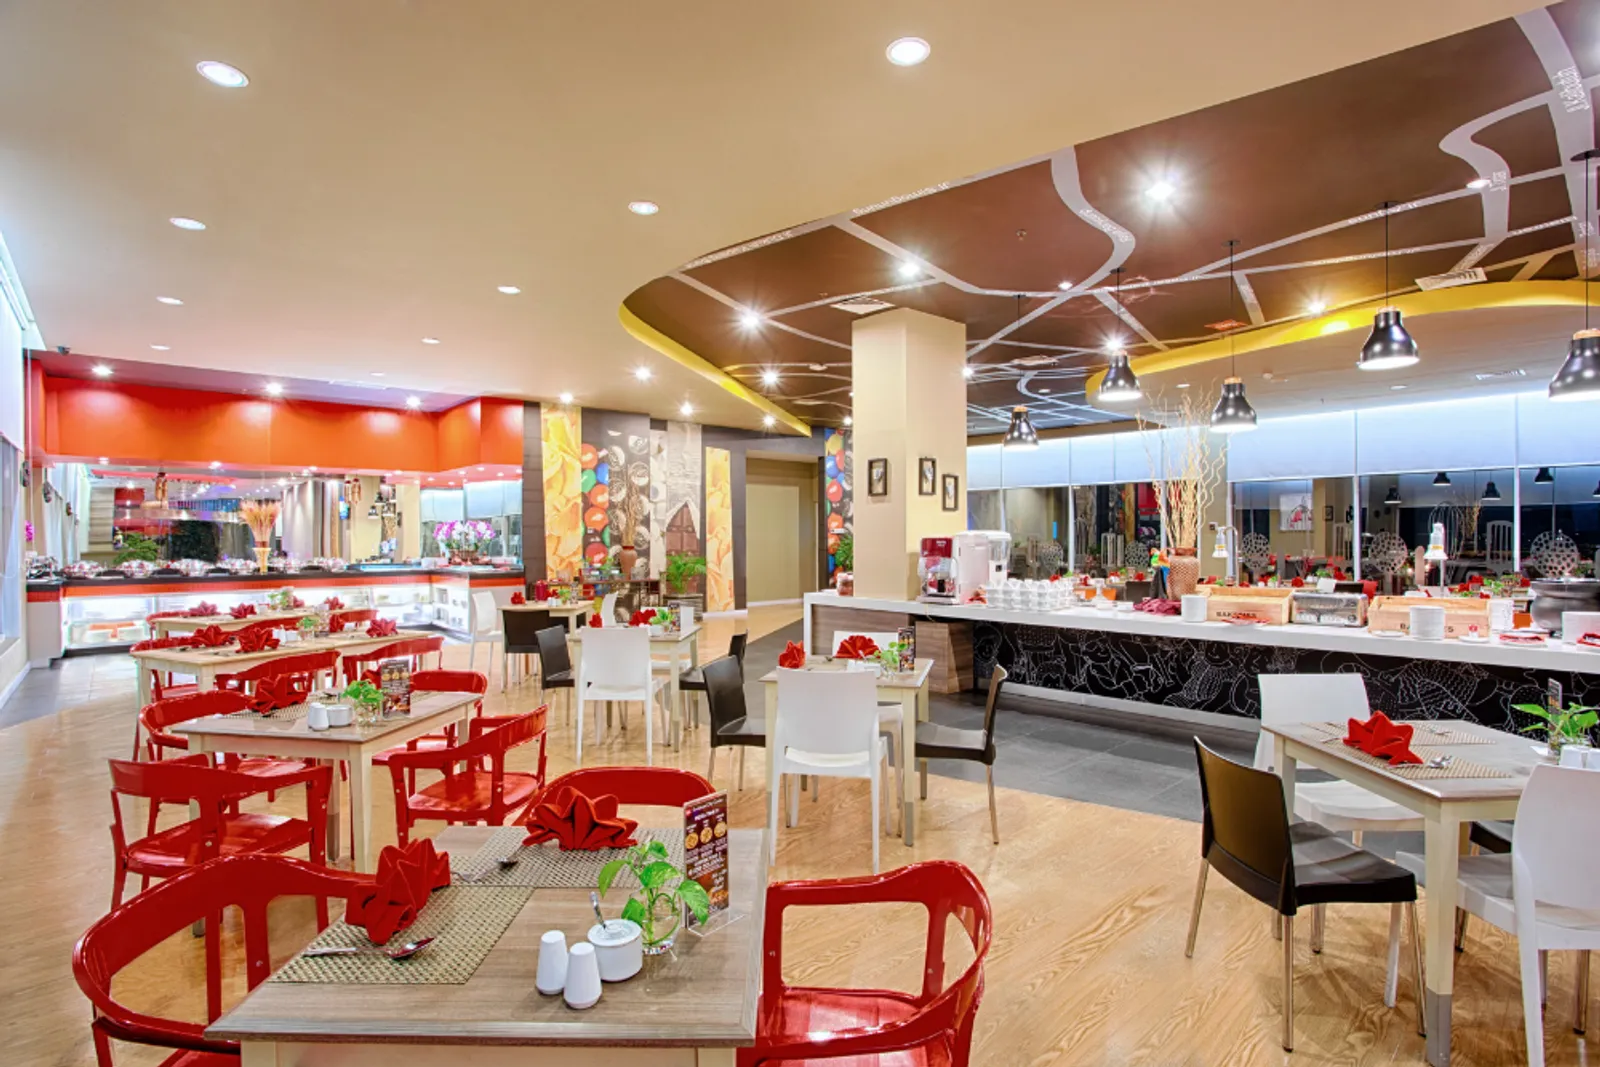 28 Restoran All You Can Eat Surabaya yang Harus Kamu Datangi